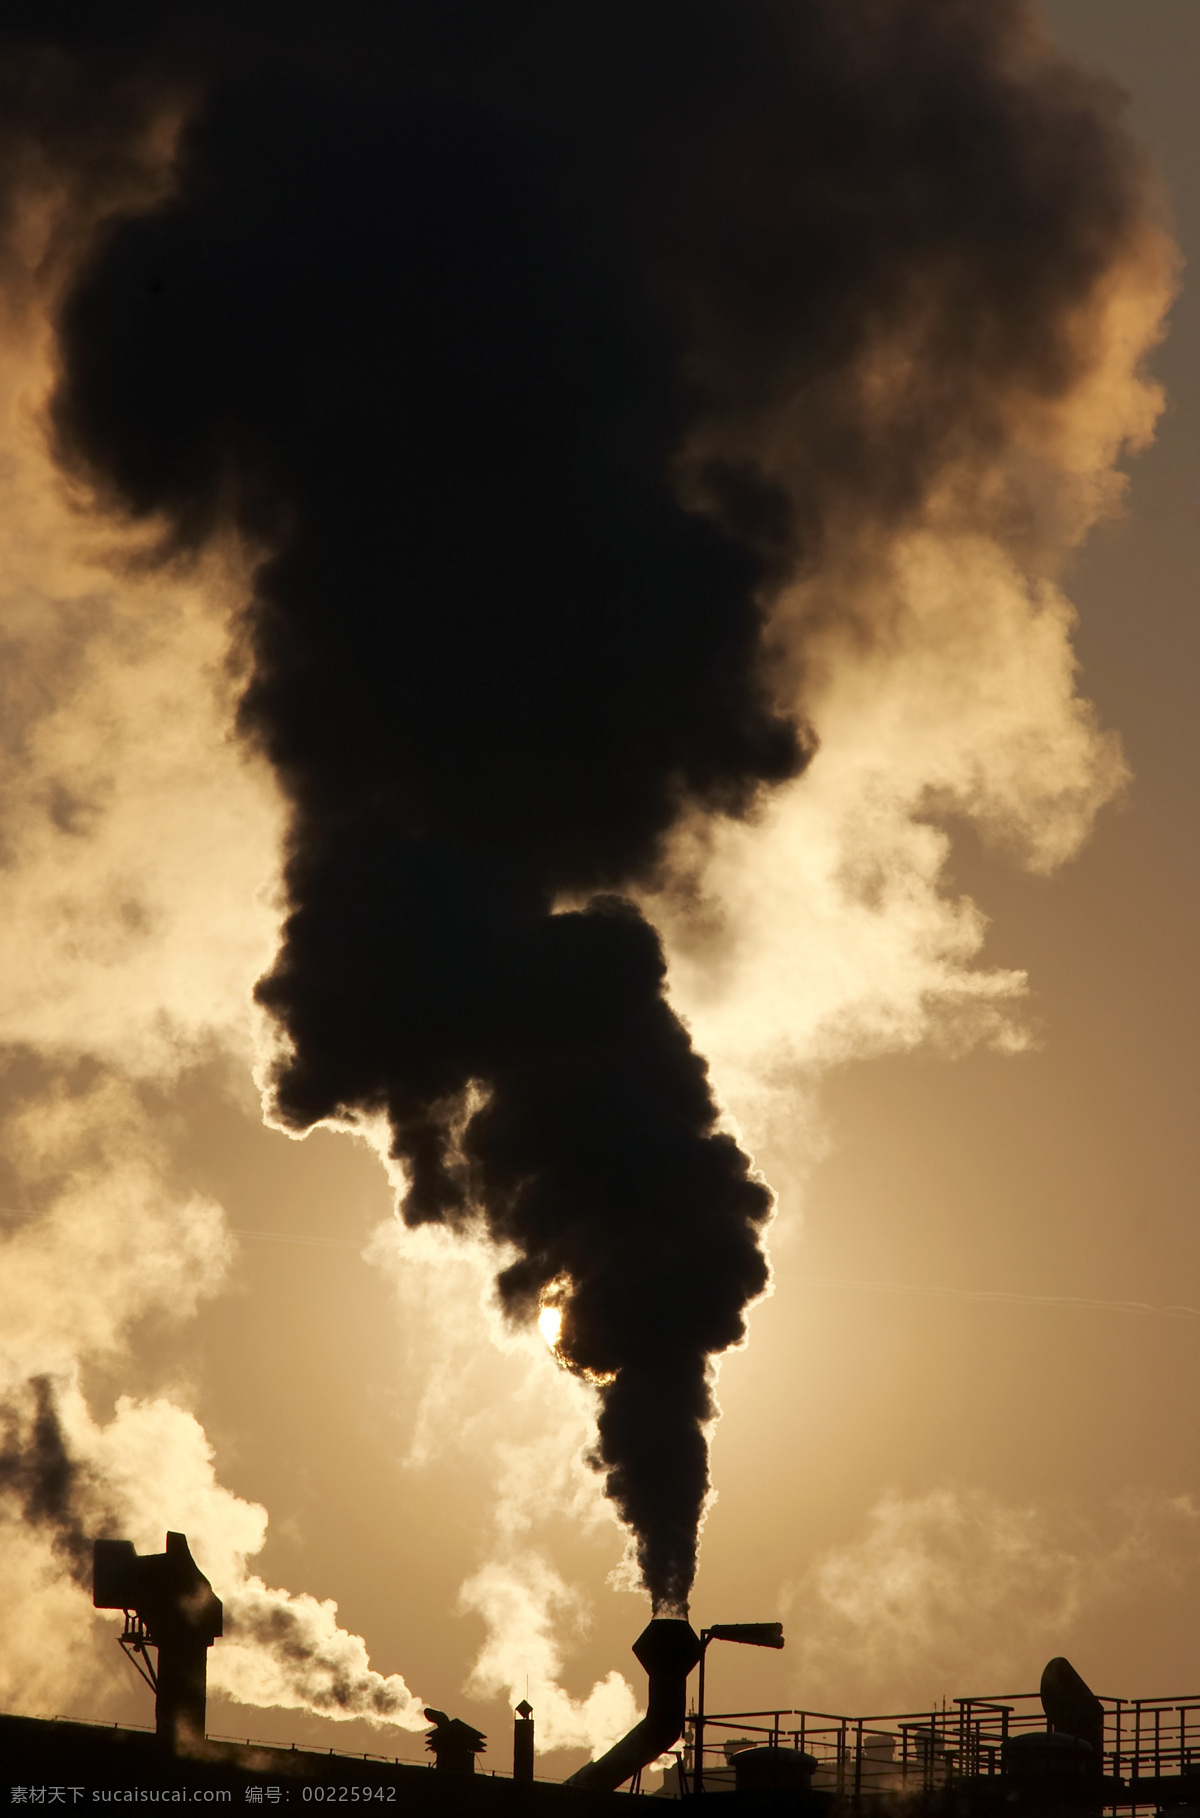 烟雾 排放 工厂 灰尘 烟雾摄影 车间 污染 环境保护 广告素材 浓烟 其他类别 生活百科 黑色